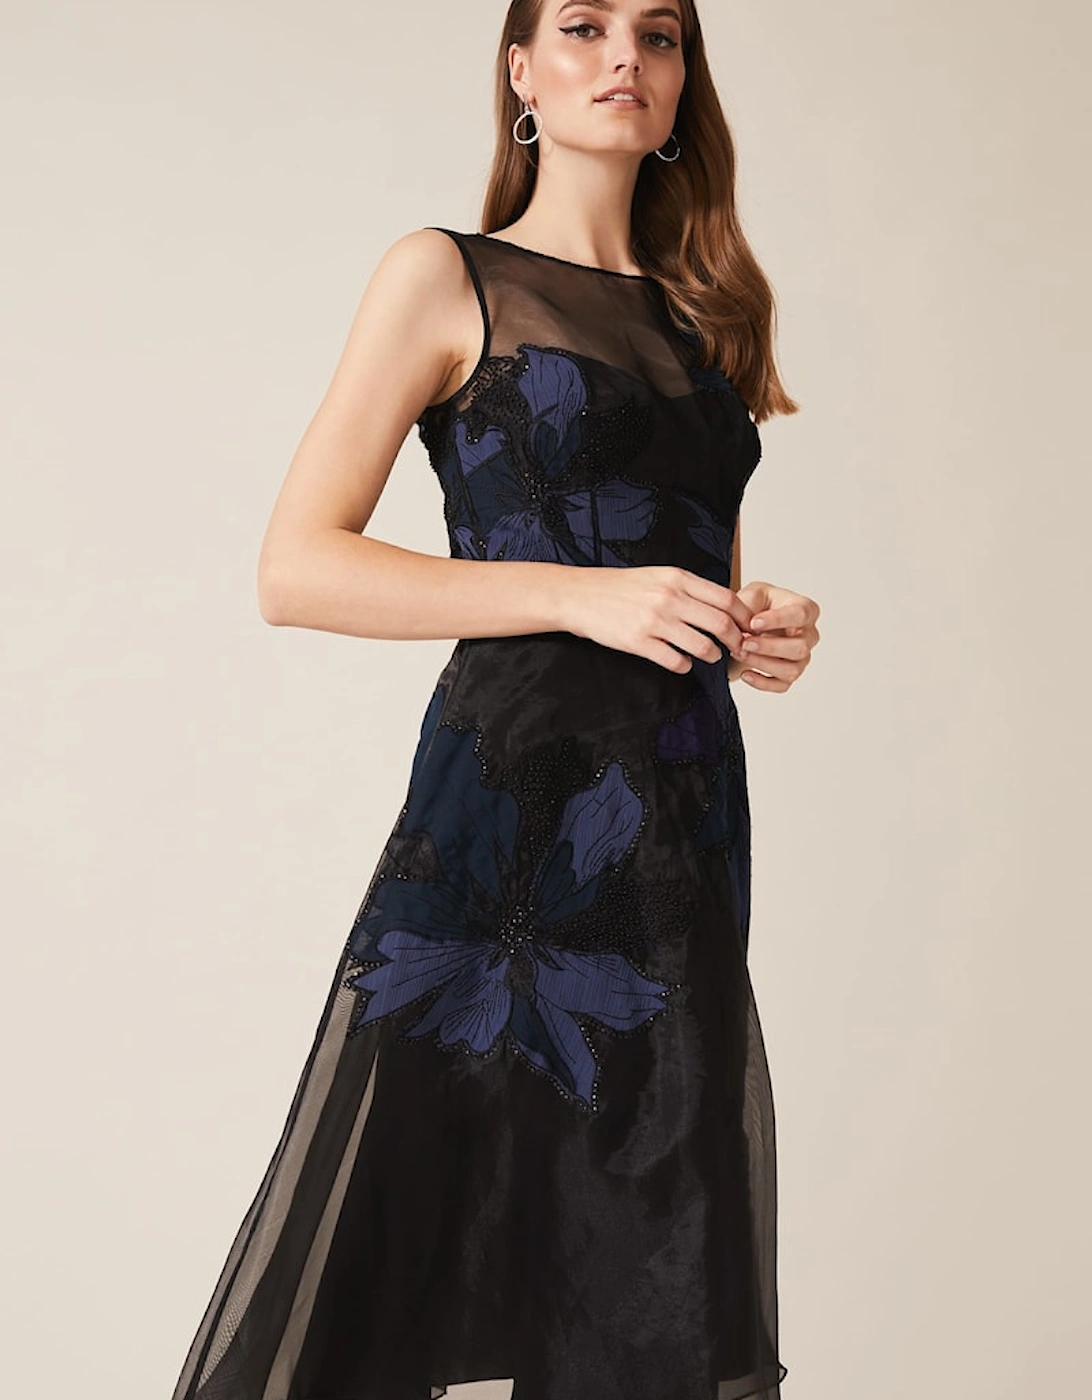 Simone Applique Flower Dress, 7 of 6